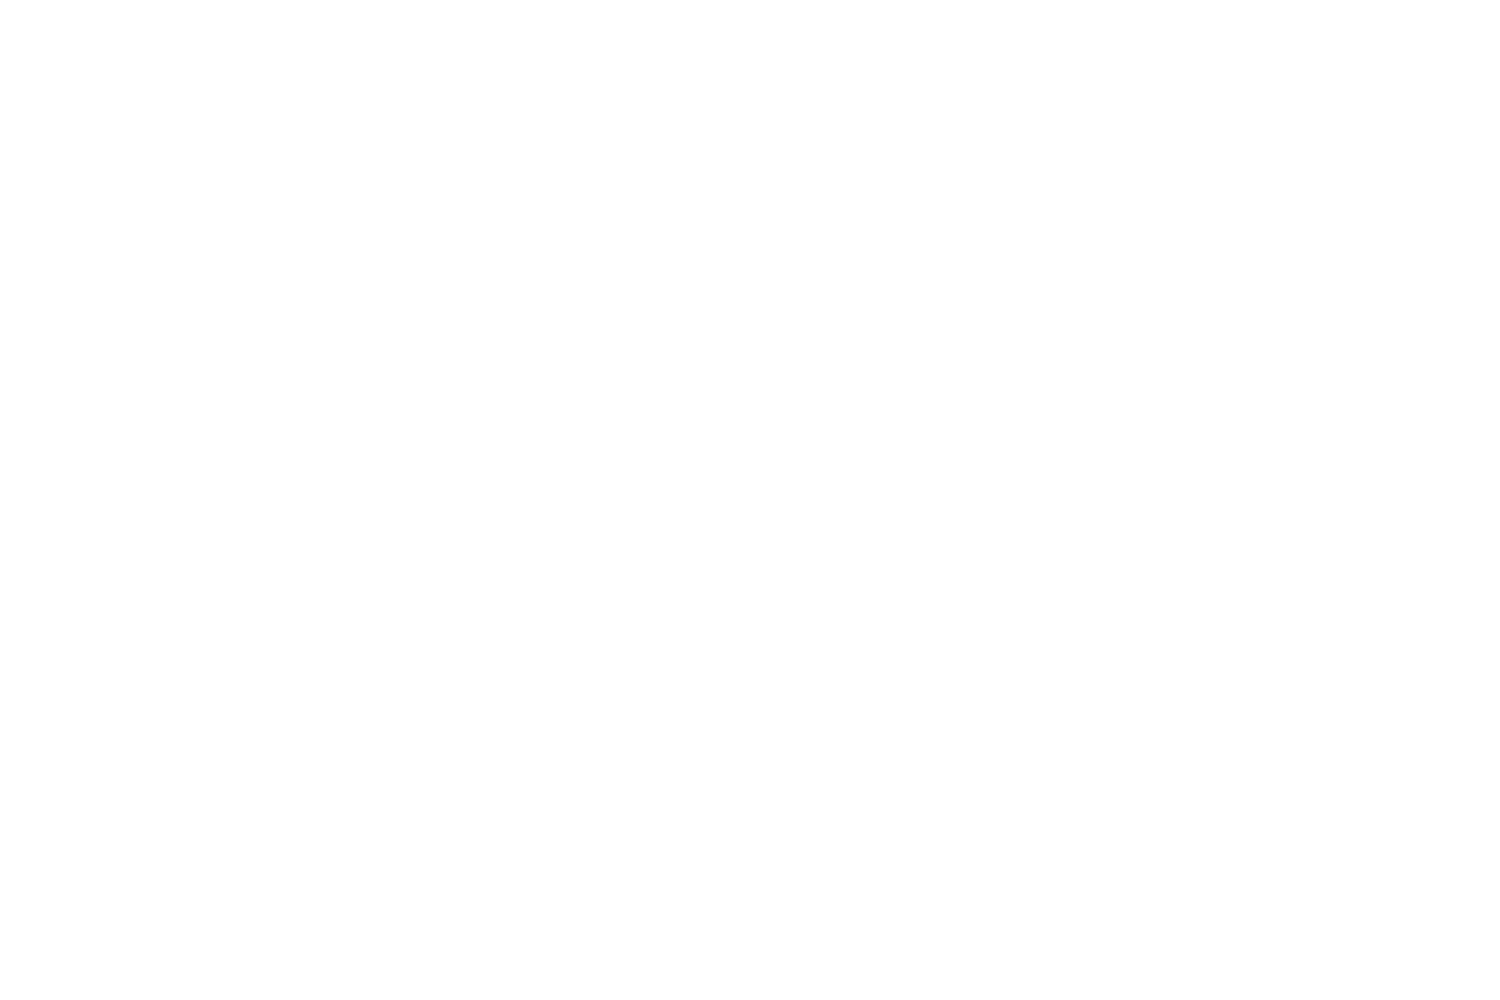 Mark Denney | Landscape Photography